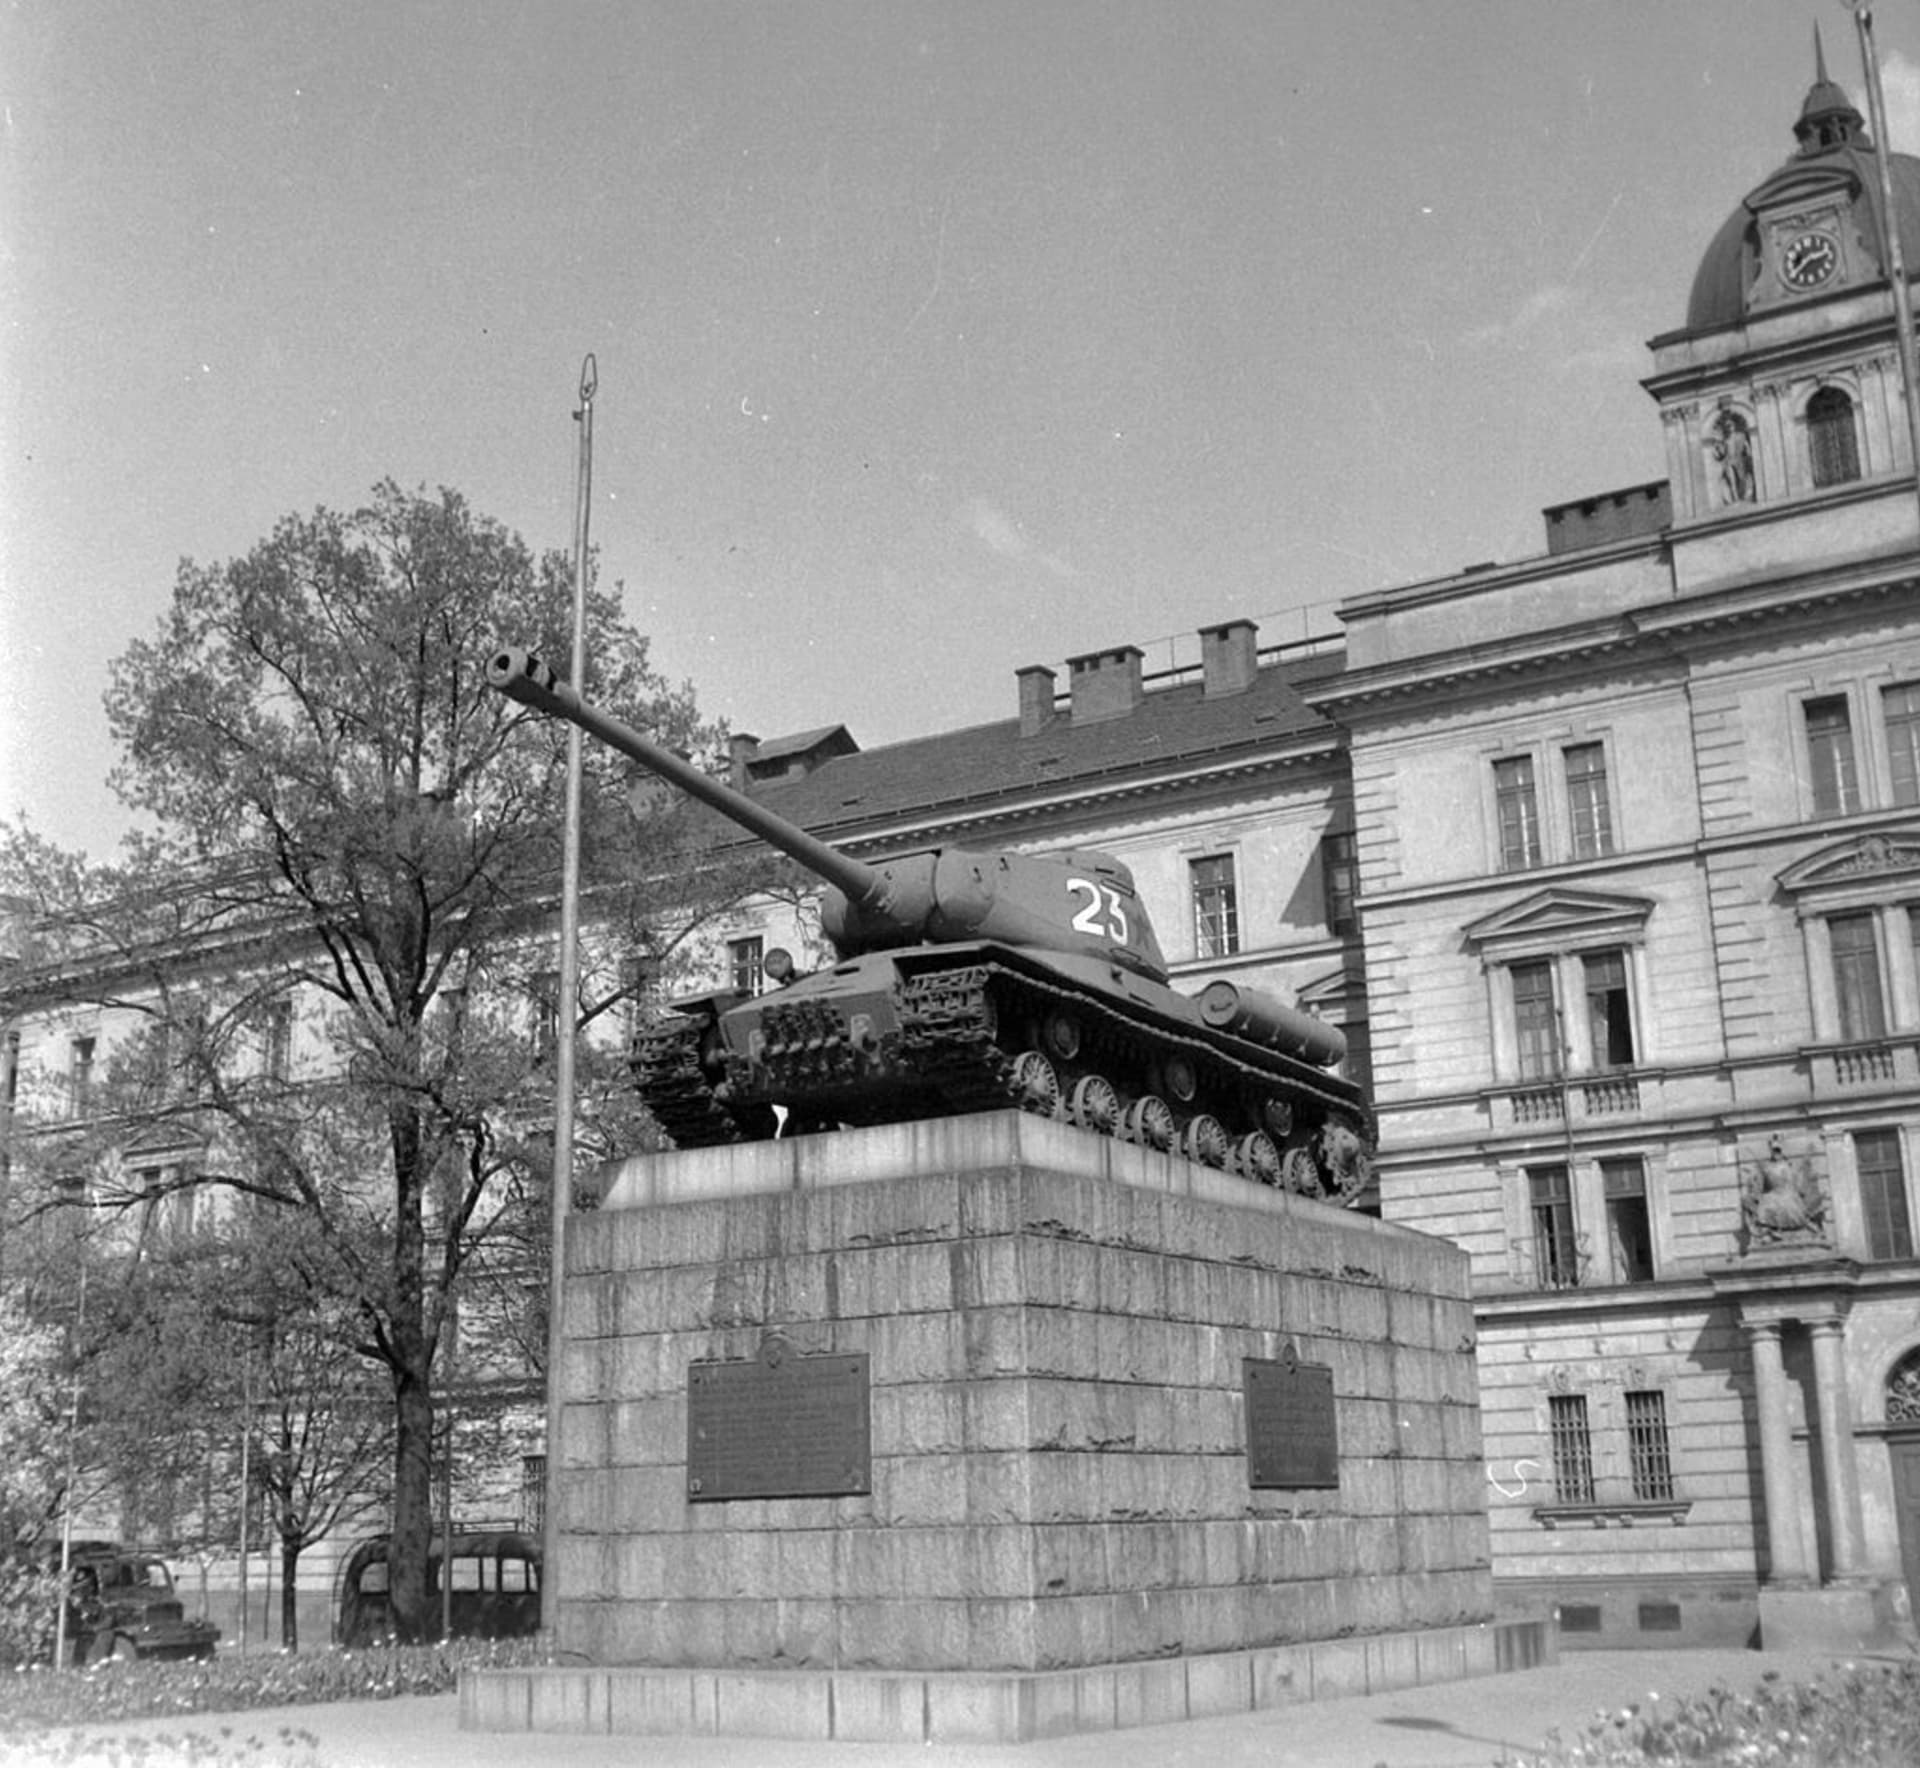 Tank č. 23 - jeden ze symbolů (a mýtů) osvobození Prahy